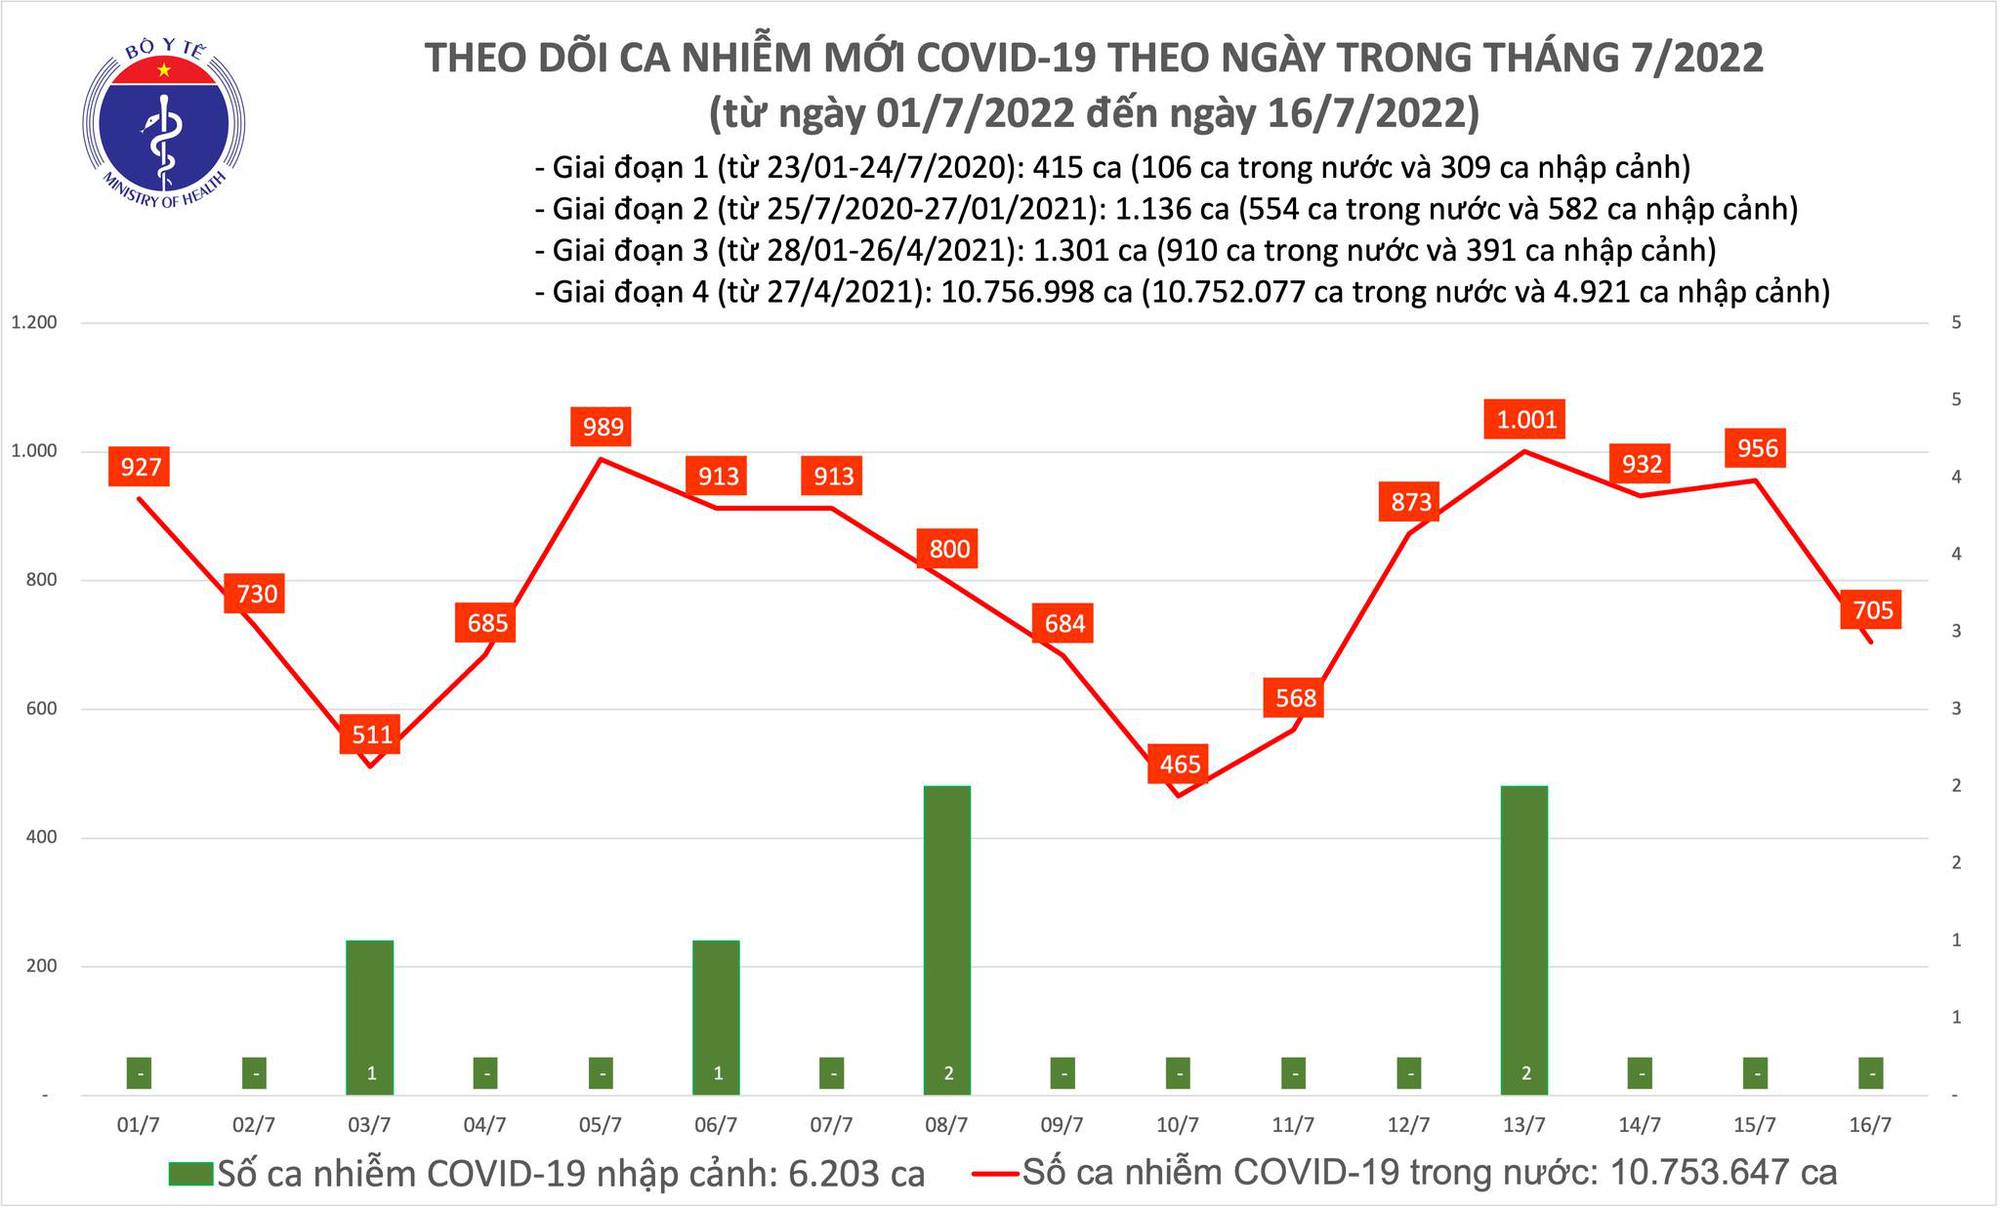 Ngày 16/7: Có 705 ca COVID-19 mới, bệnh nhân nặng tăng lên